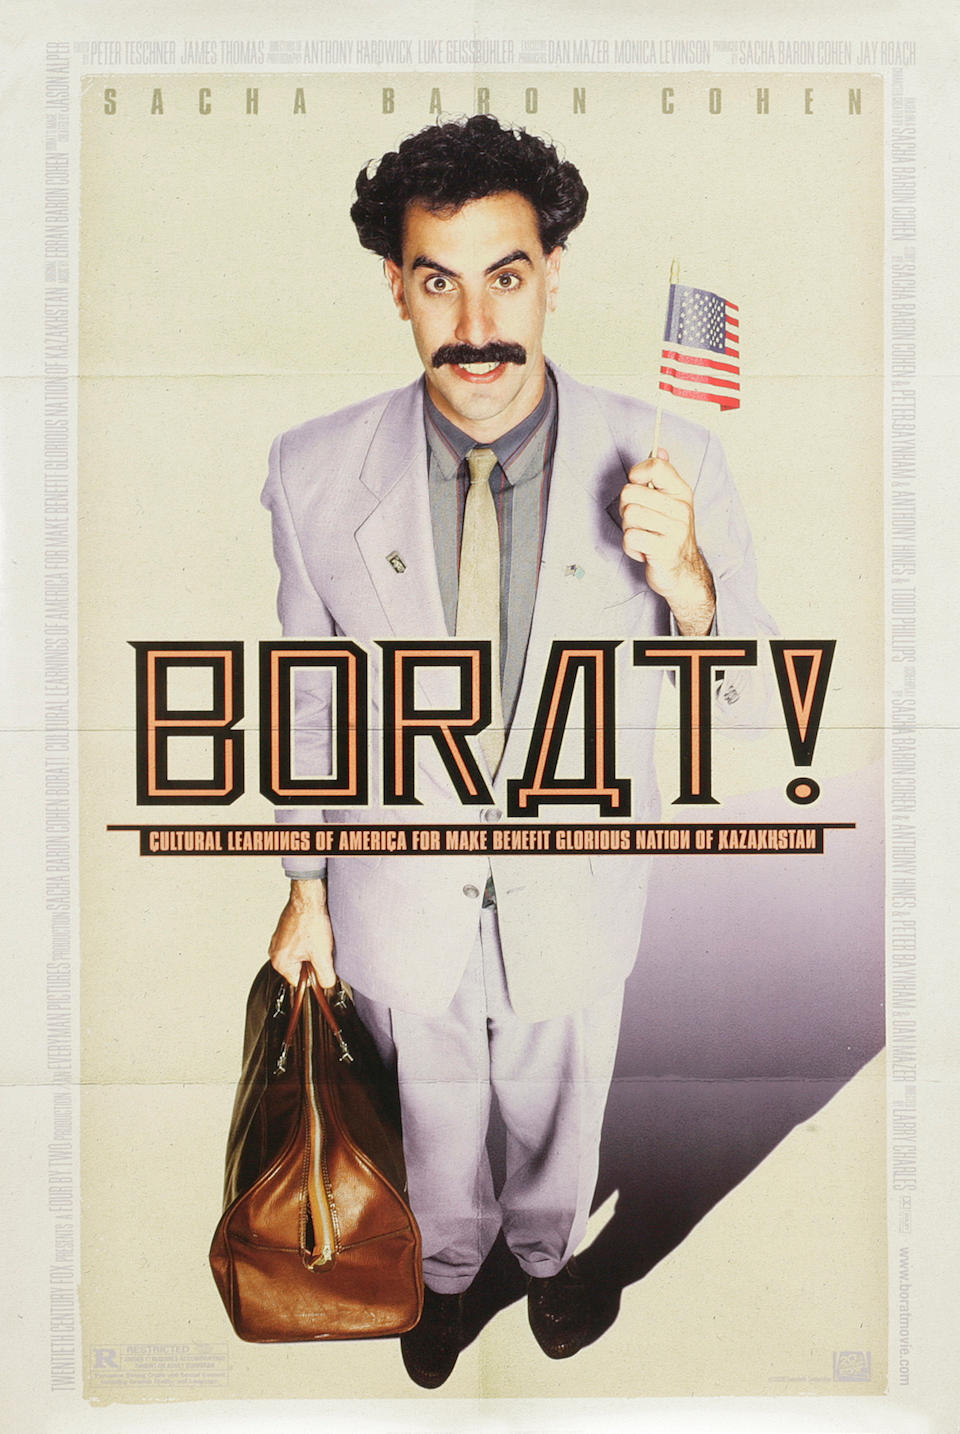 A Sacha Baron Cohen "Borat" suit